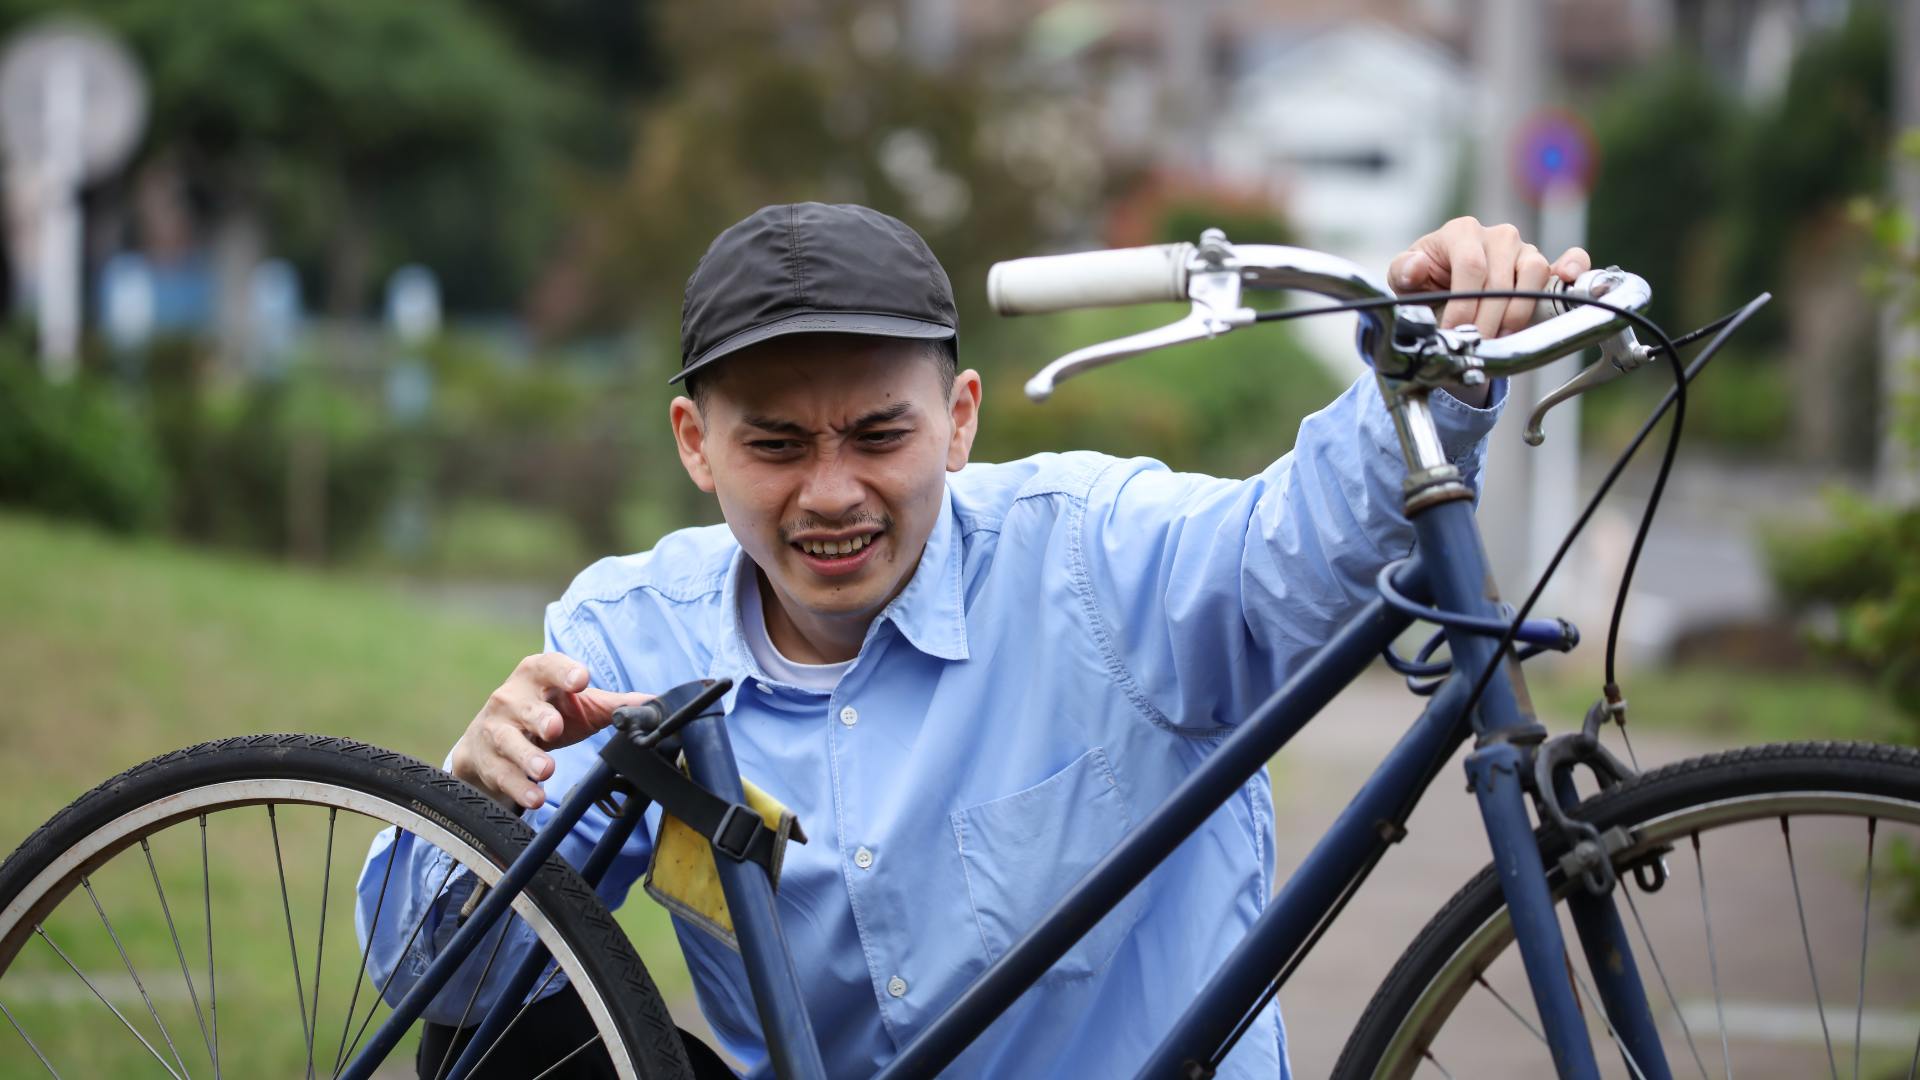 Sonhar com Bicicleta Sendo Roubada: Qual é o Significado?